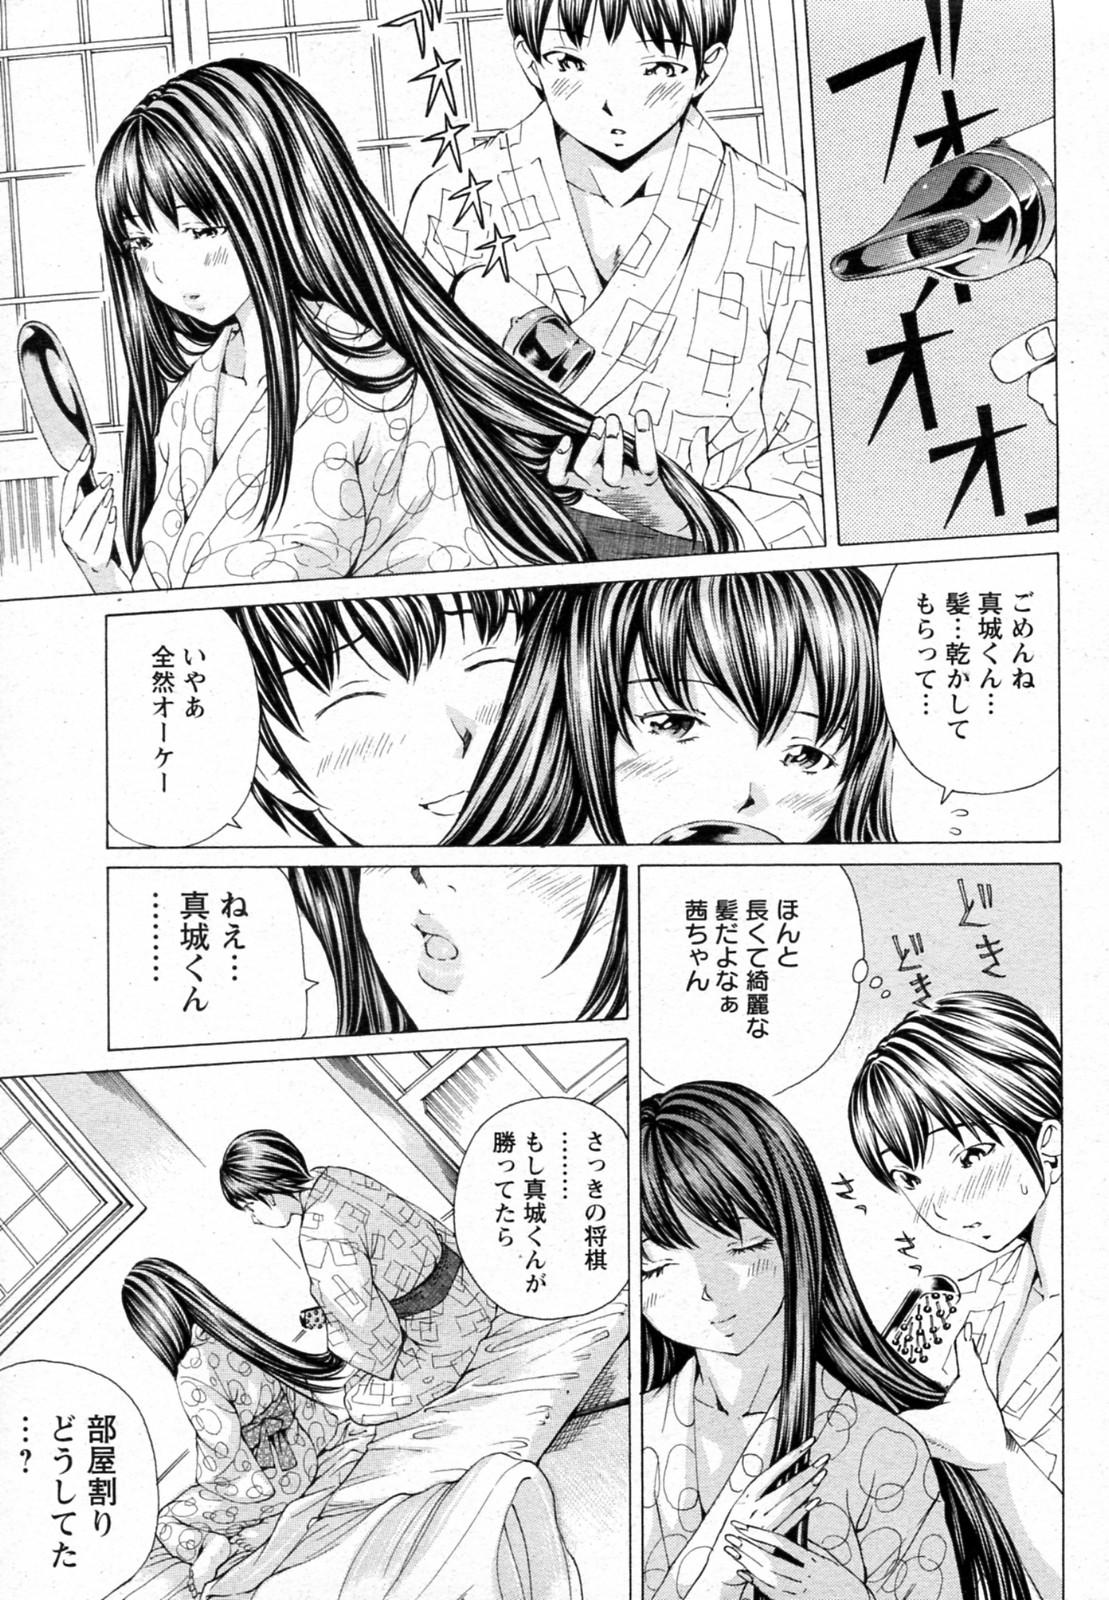 Strap On Sakuranbo no Toki Amature Sex Tapes - Page 5